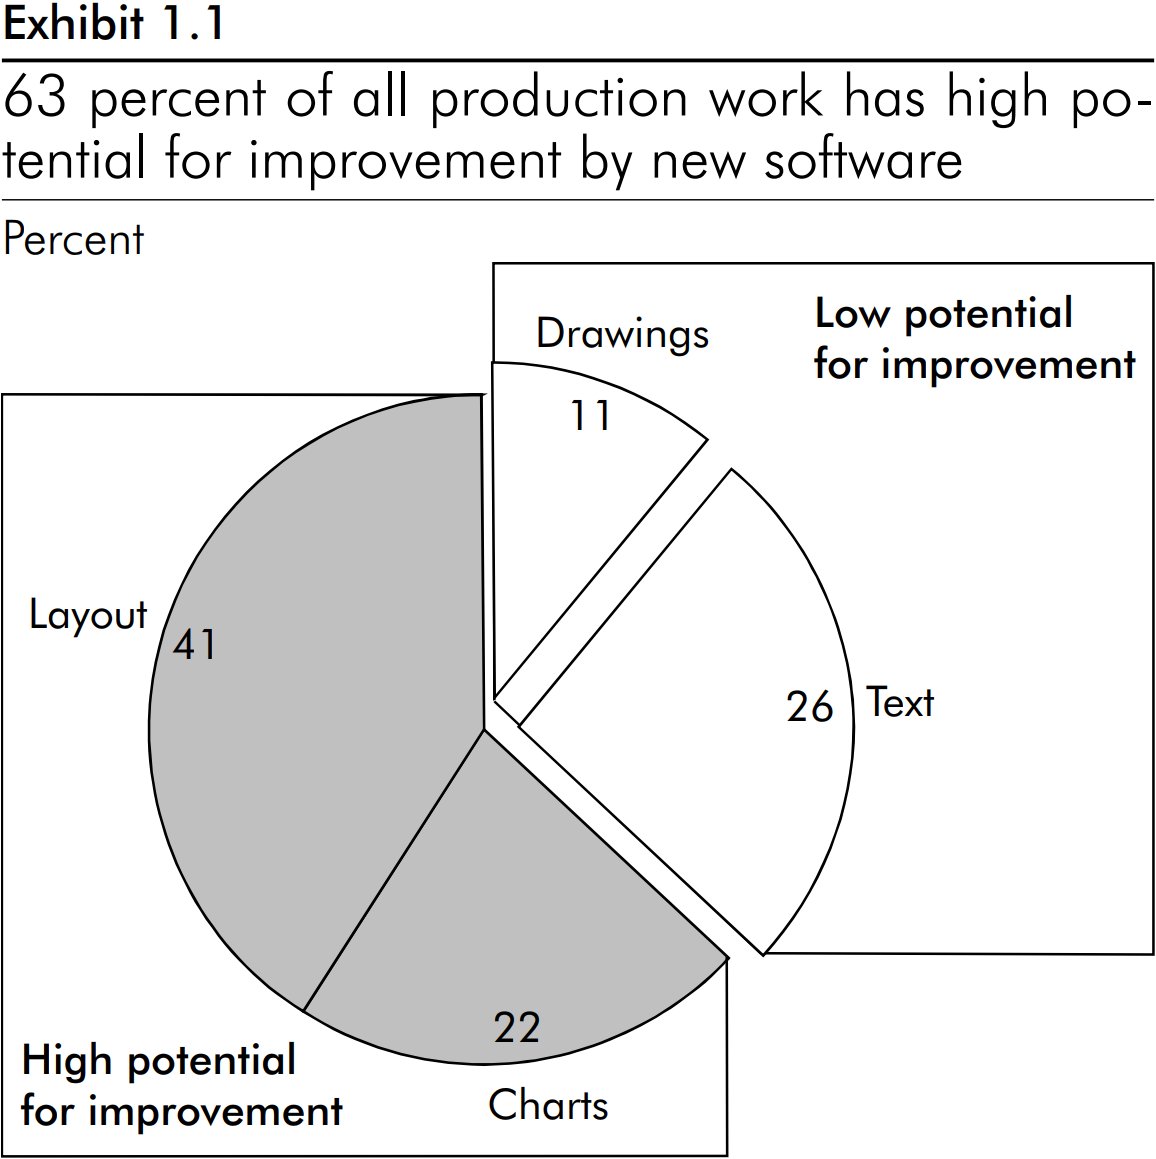 Gráfico de pizza demonstrando que 63% do trabalho de produção de slides tem alto potencial para melhorias pelo software.